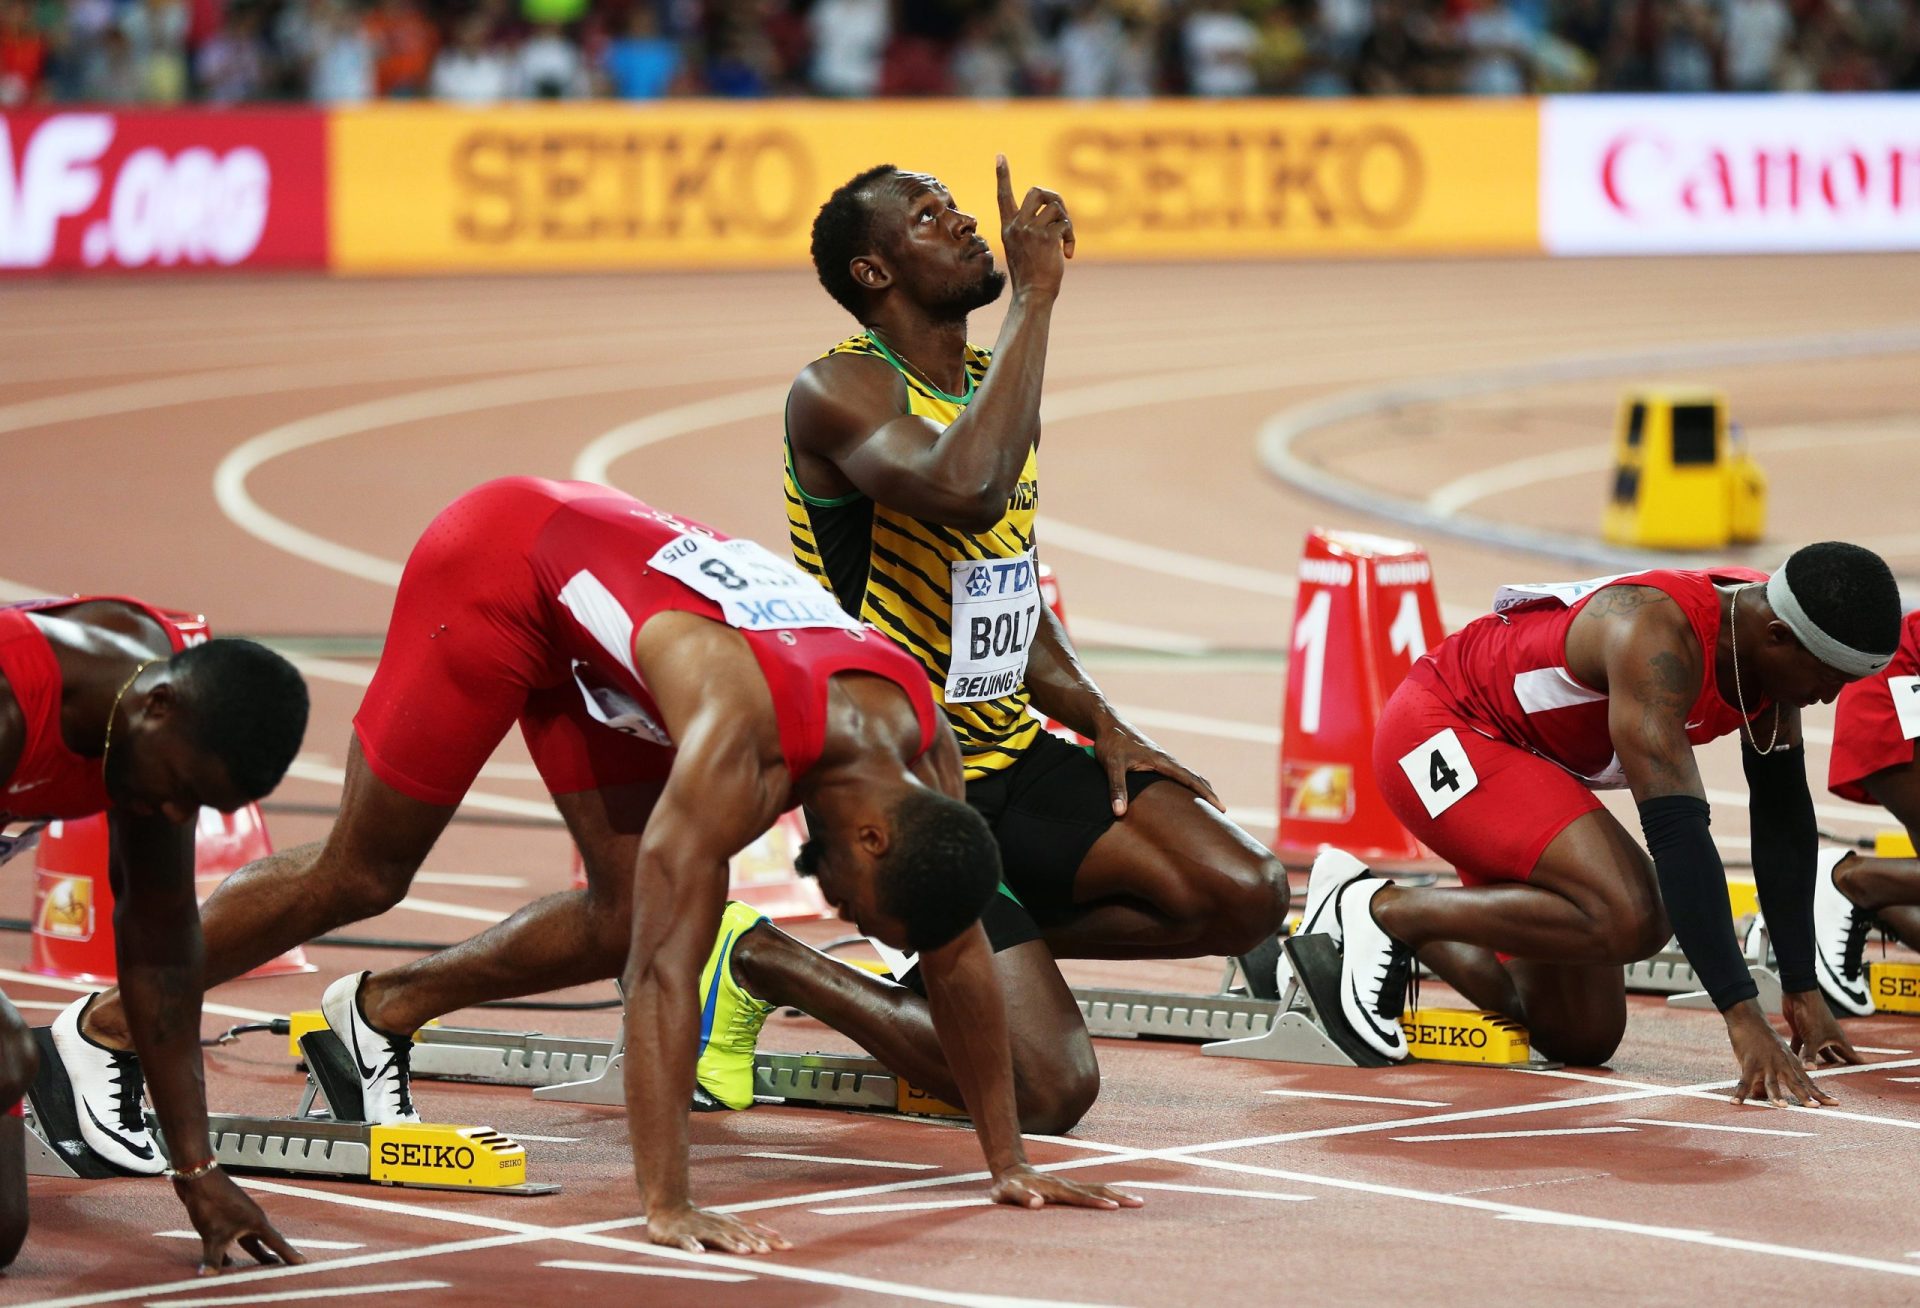 Mundiais atletismo. Usain Bolt revalida título nos 100 metros